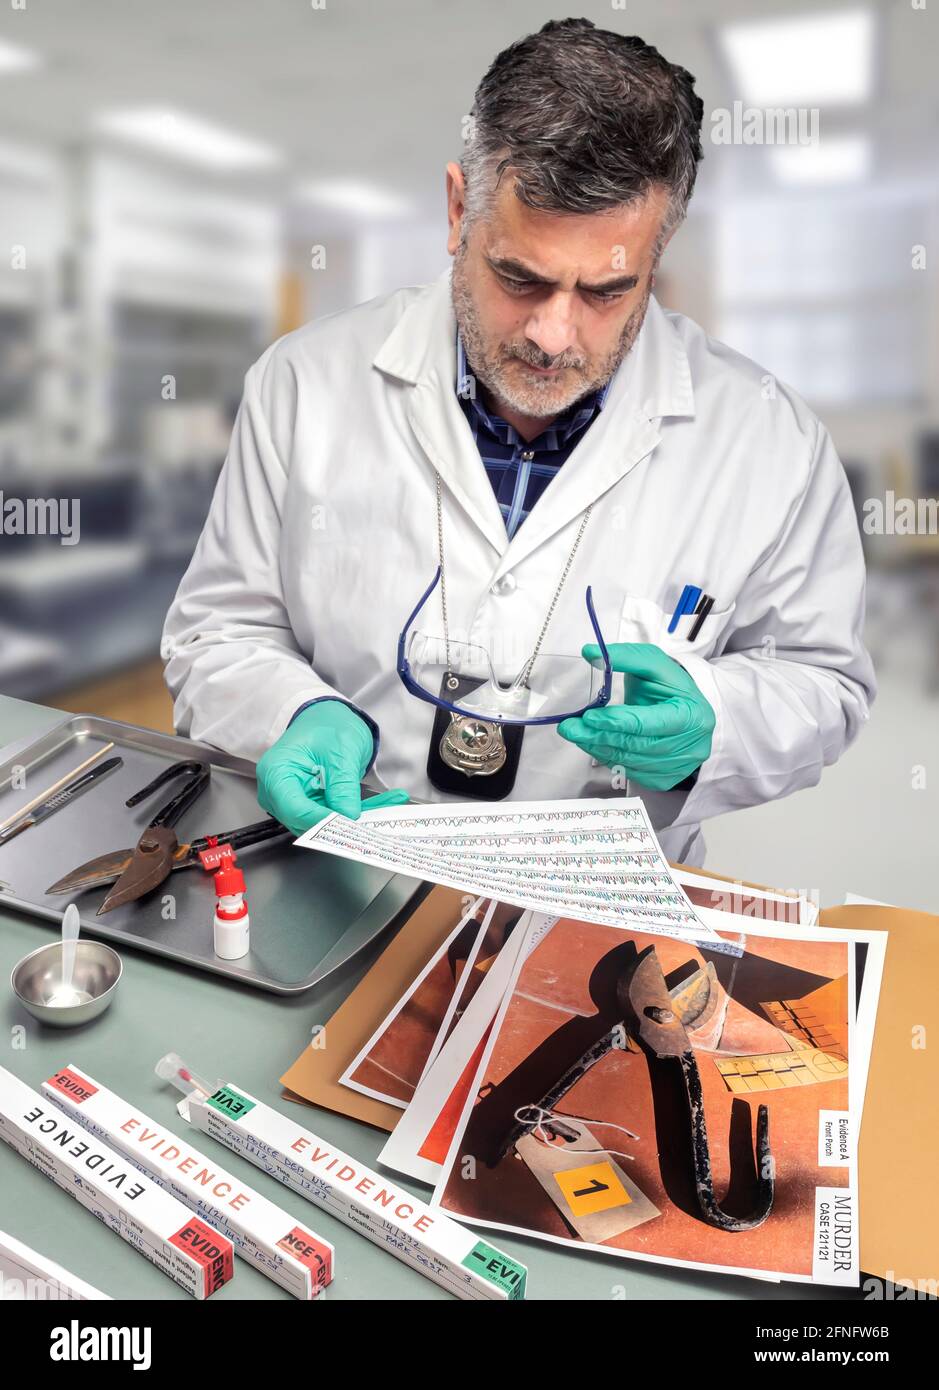 El científico de la policía comprueba el análisis de cromatografía para detectar trazas de ADN en el cuchillo en el laboratorio del crimen, imagen conceptual Foto de stock